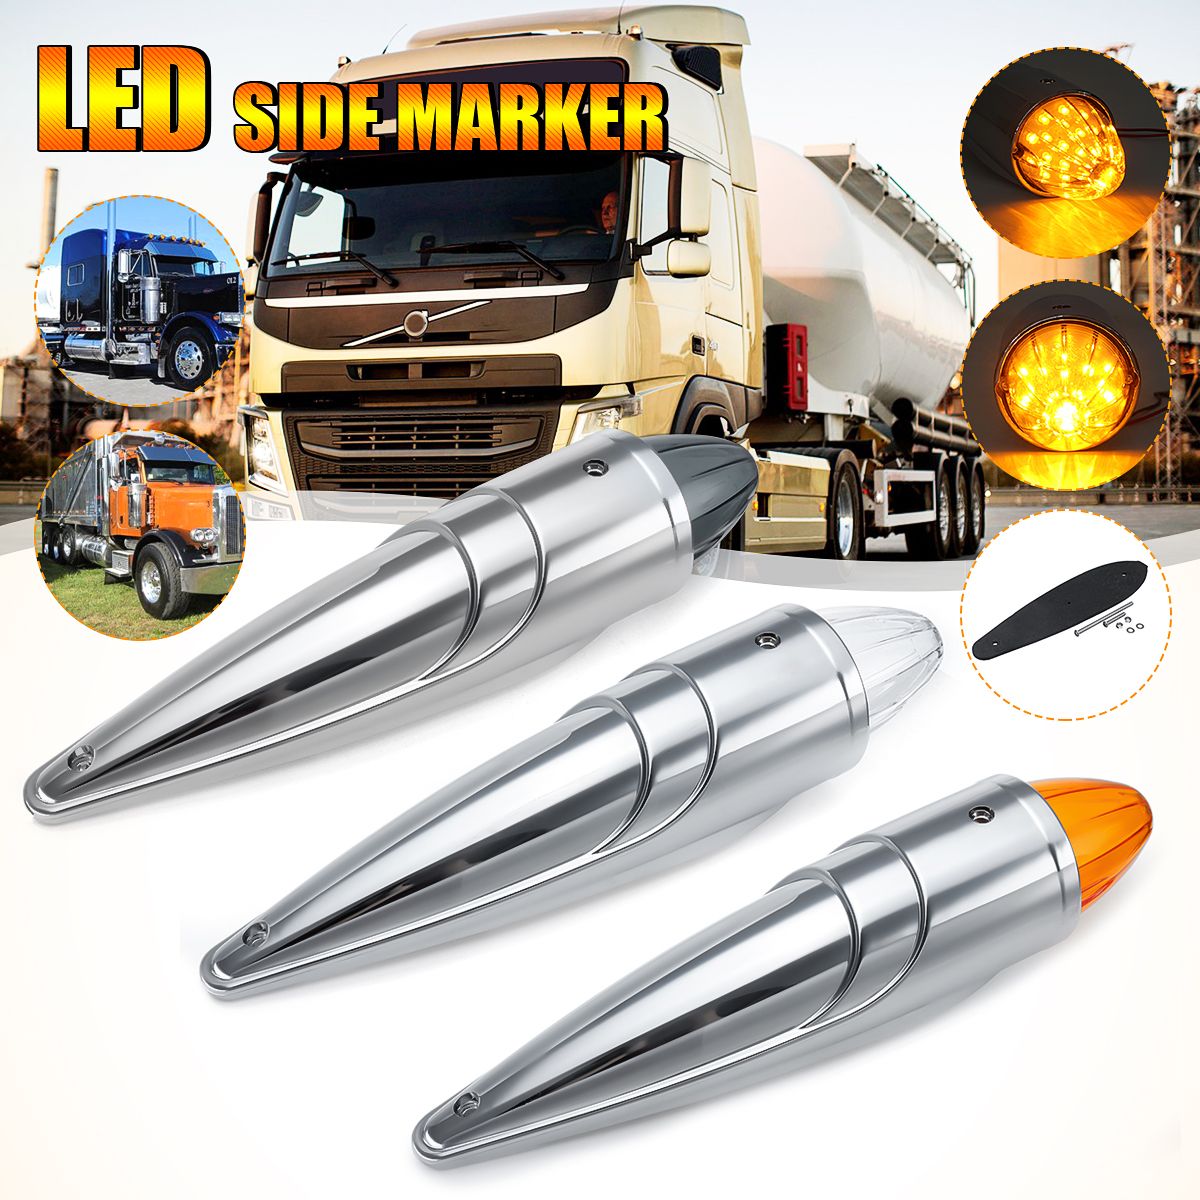 1PC-12V-17-LED-Cab-Roof-Side-Marker-Running-Light-Clearance-Lamp-For-Peterbilt-Trucks-Bus-1742184